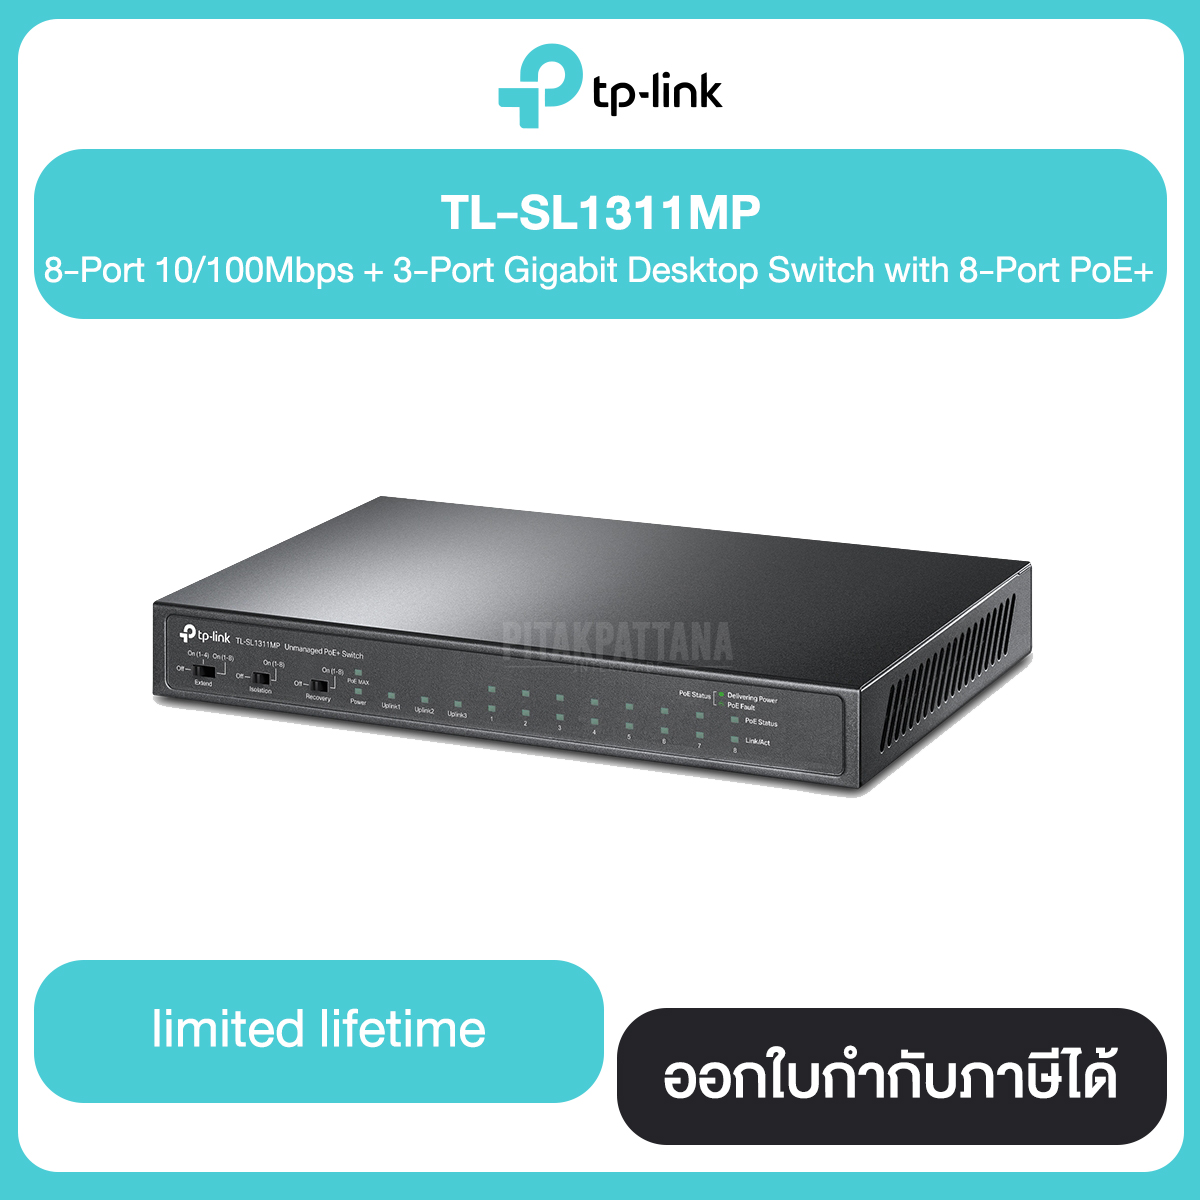 TP-Link TL-SL1311MP 8-Port 10/100Mbps +3-Port Gigabit Switch